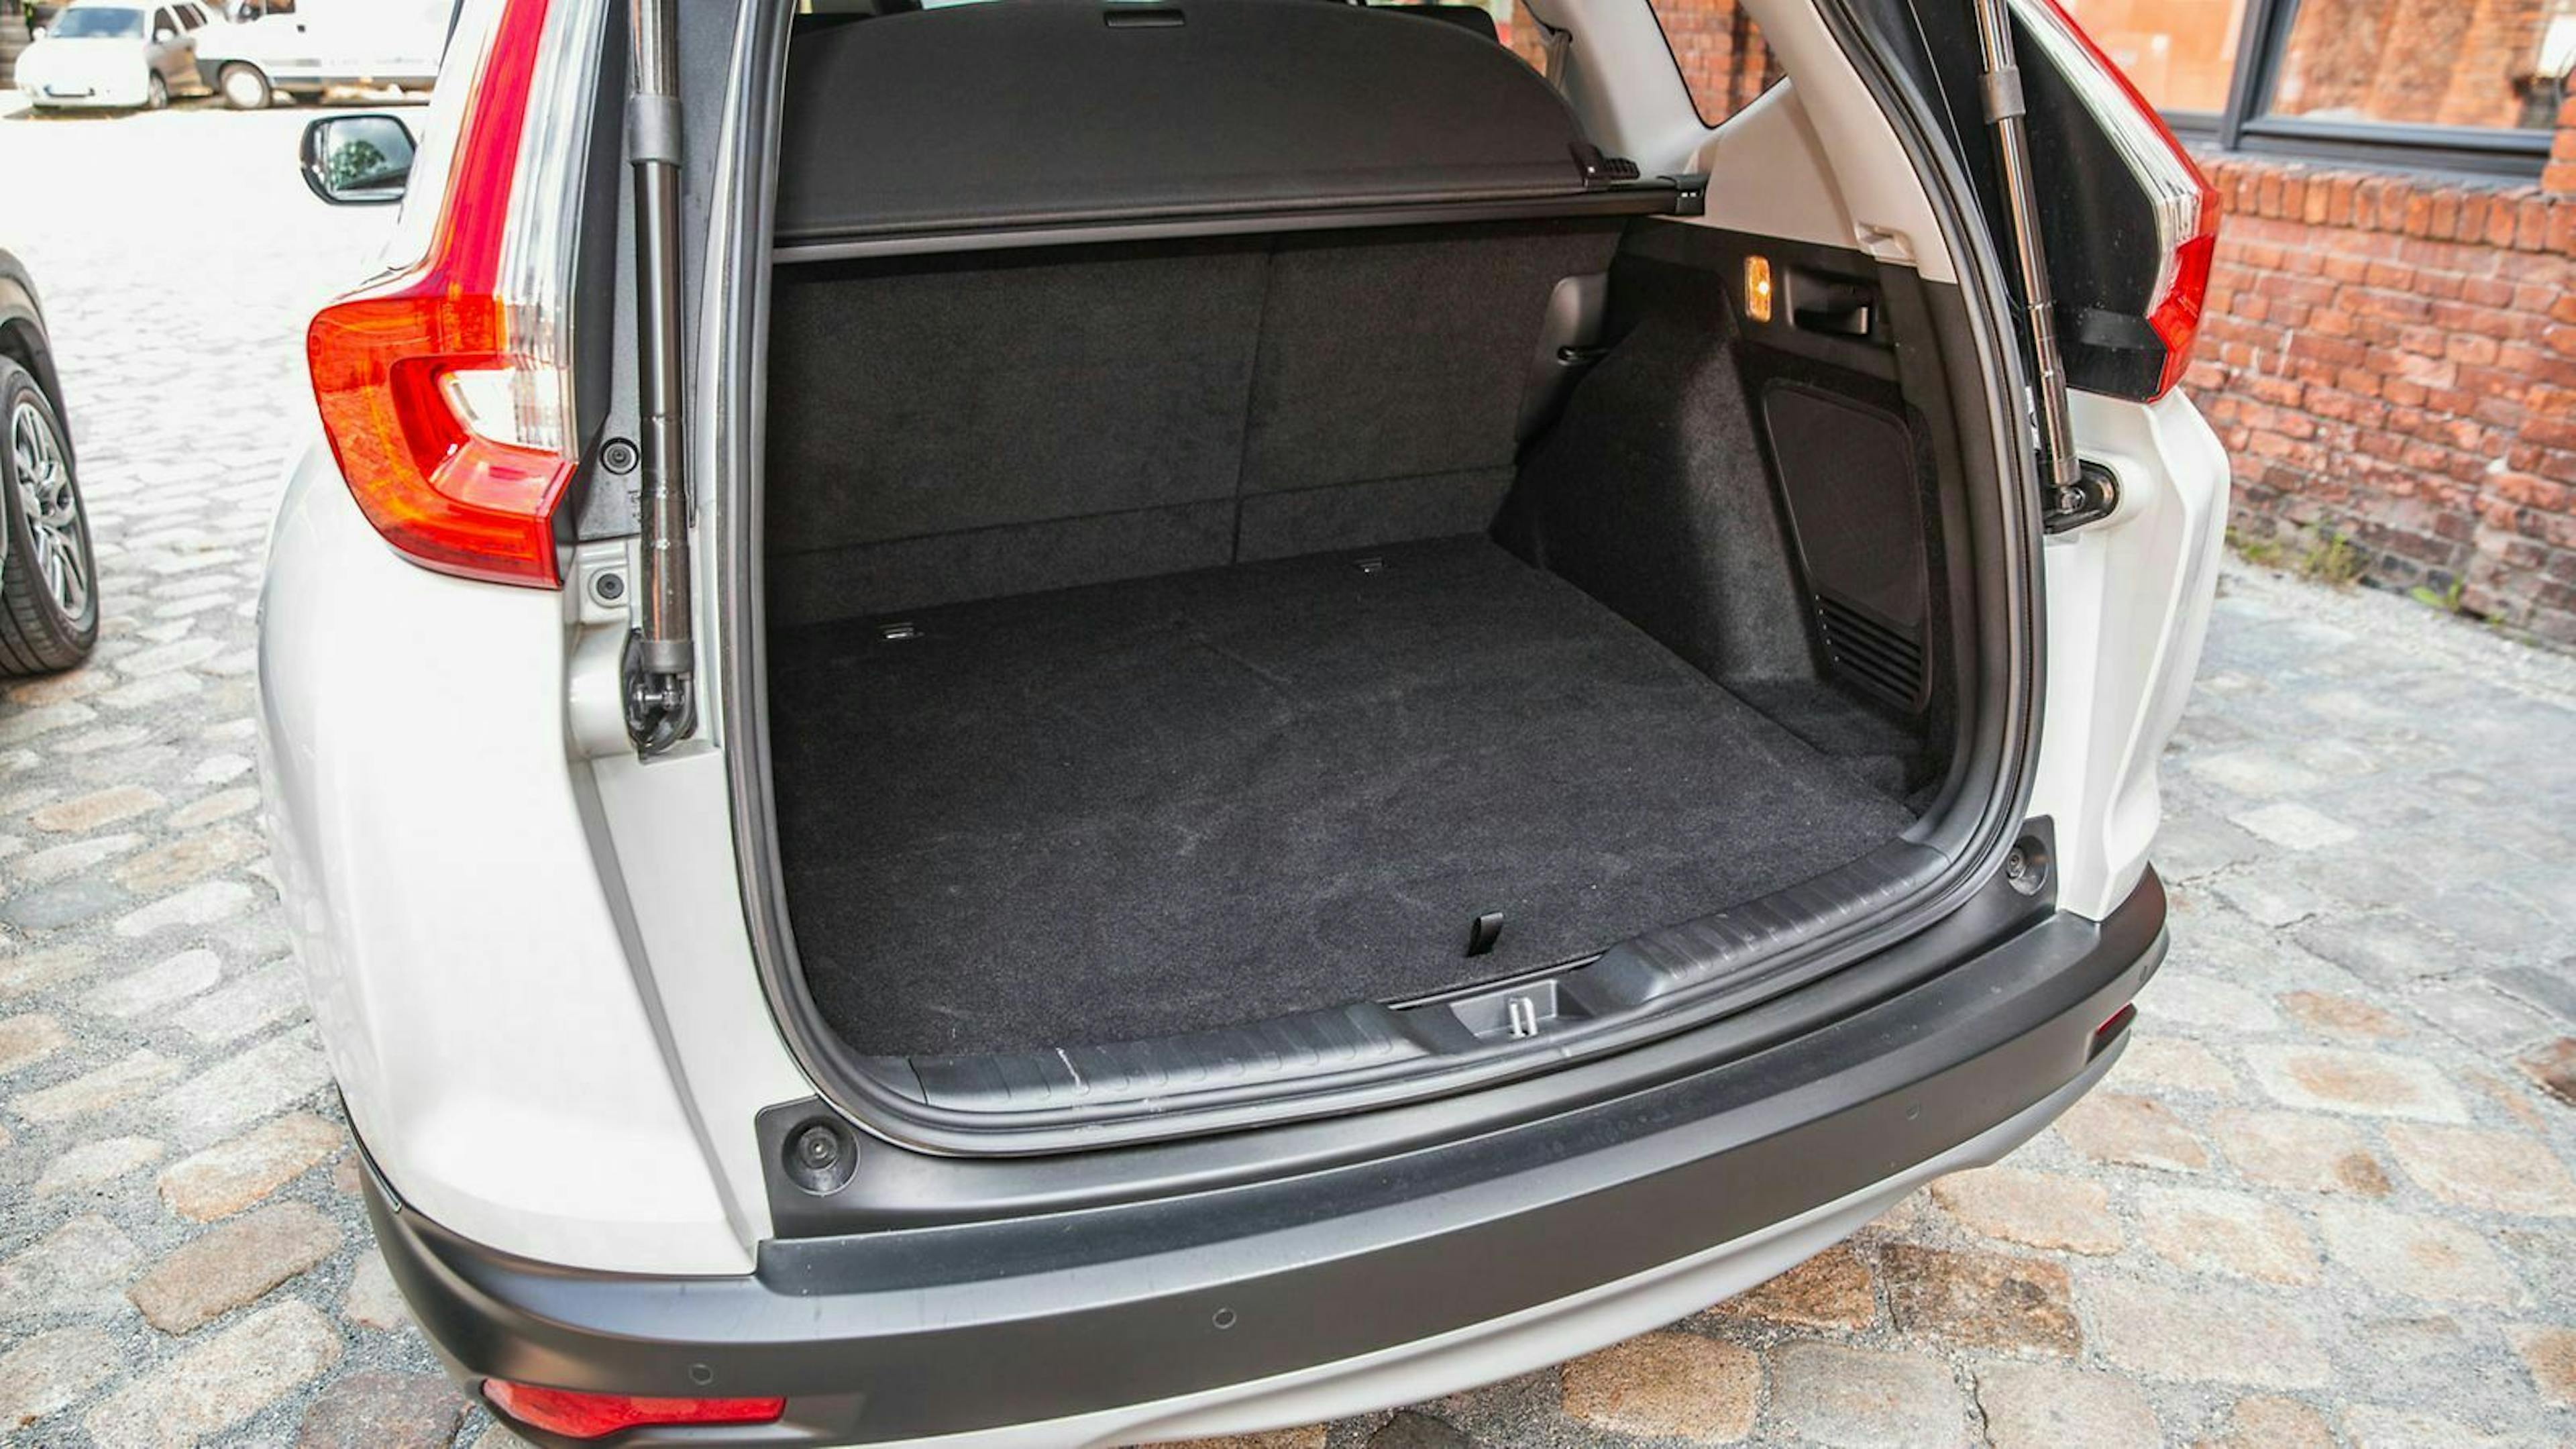 Der Honda CR-V stellt rund 500 Liter Platz im Kofferraum bereit. Maximal sind 1.692 Liter Stauraum möglich